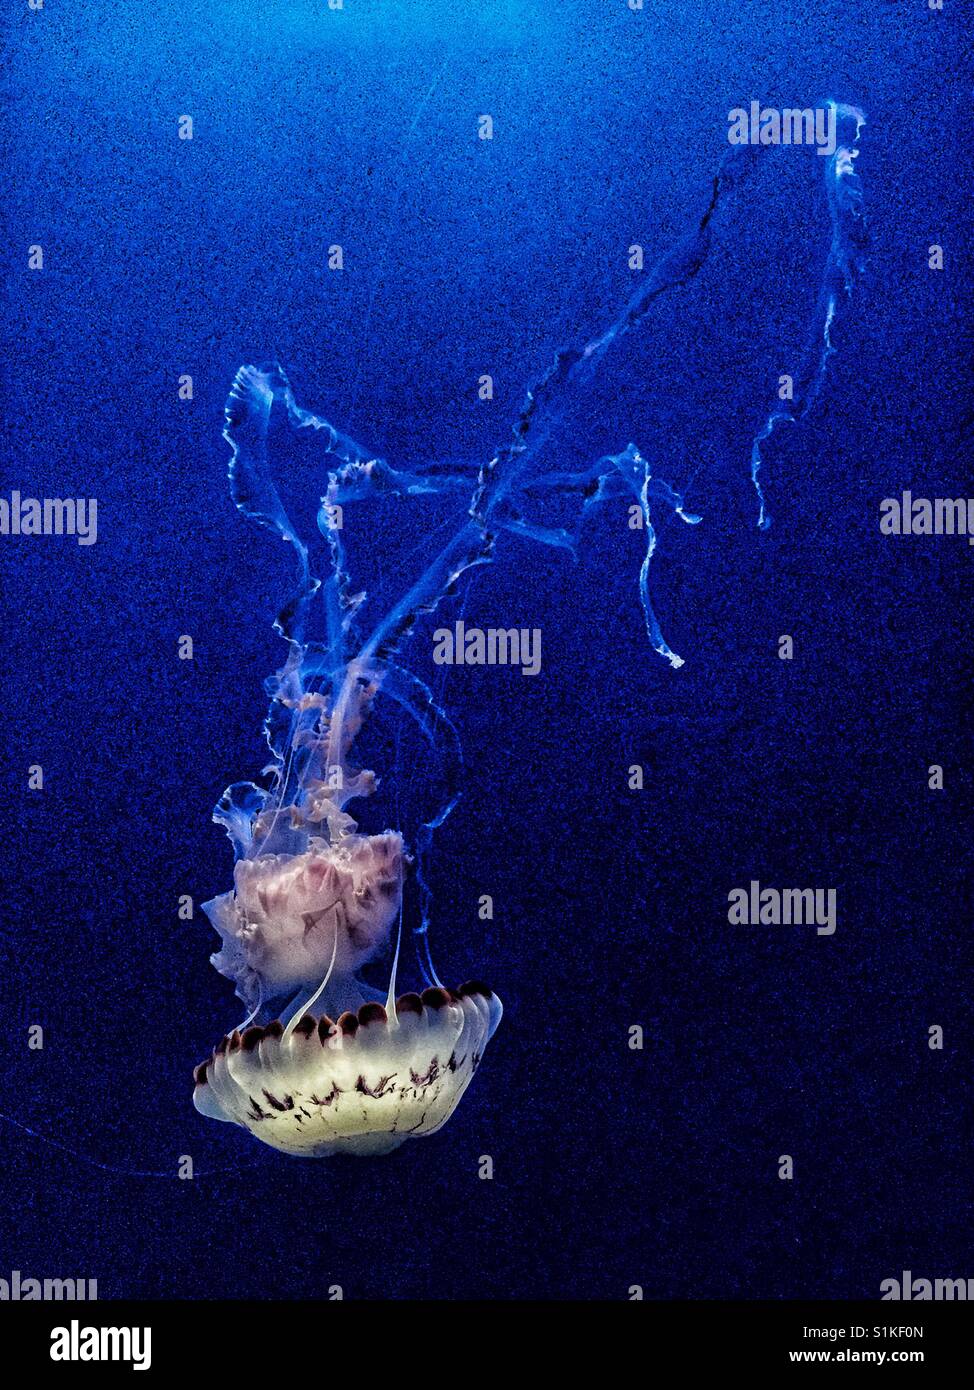 Medusas suaves cuerpos de animales acuáticos paraguas con forma de campana y largos tentáculos final. Medusas fluyendo con largos tentáculos final. Foto de stock